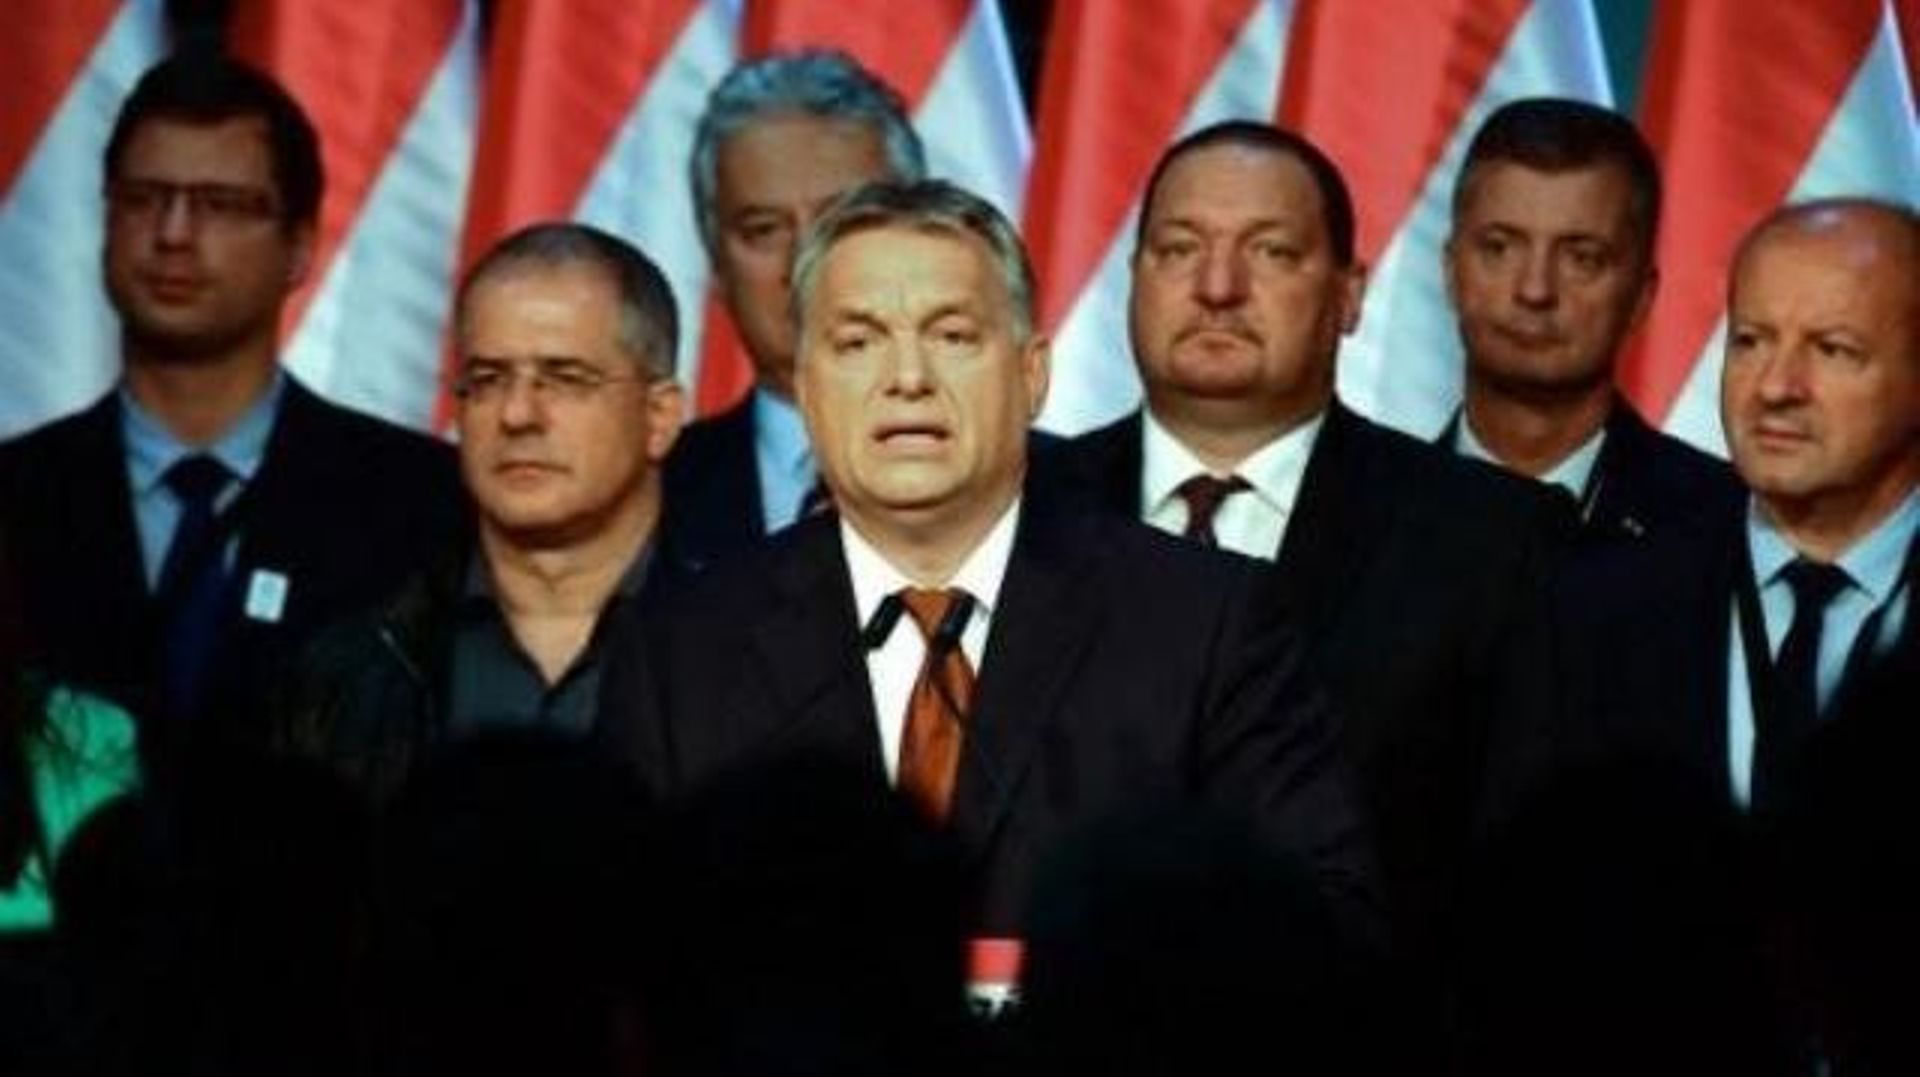 Référendum en Hongrie: le non à 98,3%, mais seuls 39,9% des inscrits se sont exprimés